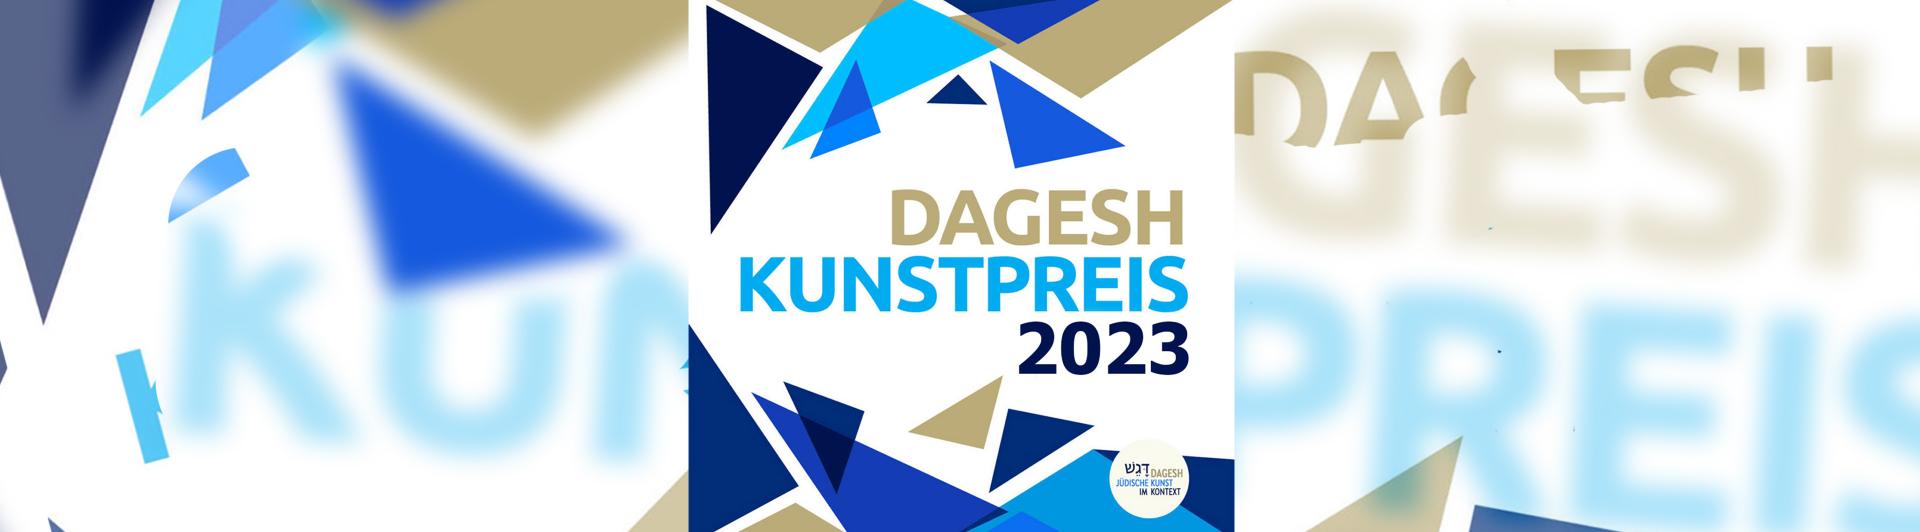 Graphik mit blauen und goldenen Dreiecken, in der Mitte folgender Schriftzug: Dagesh Kunstpreis 2023.